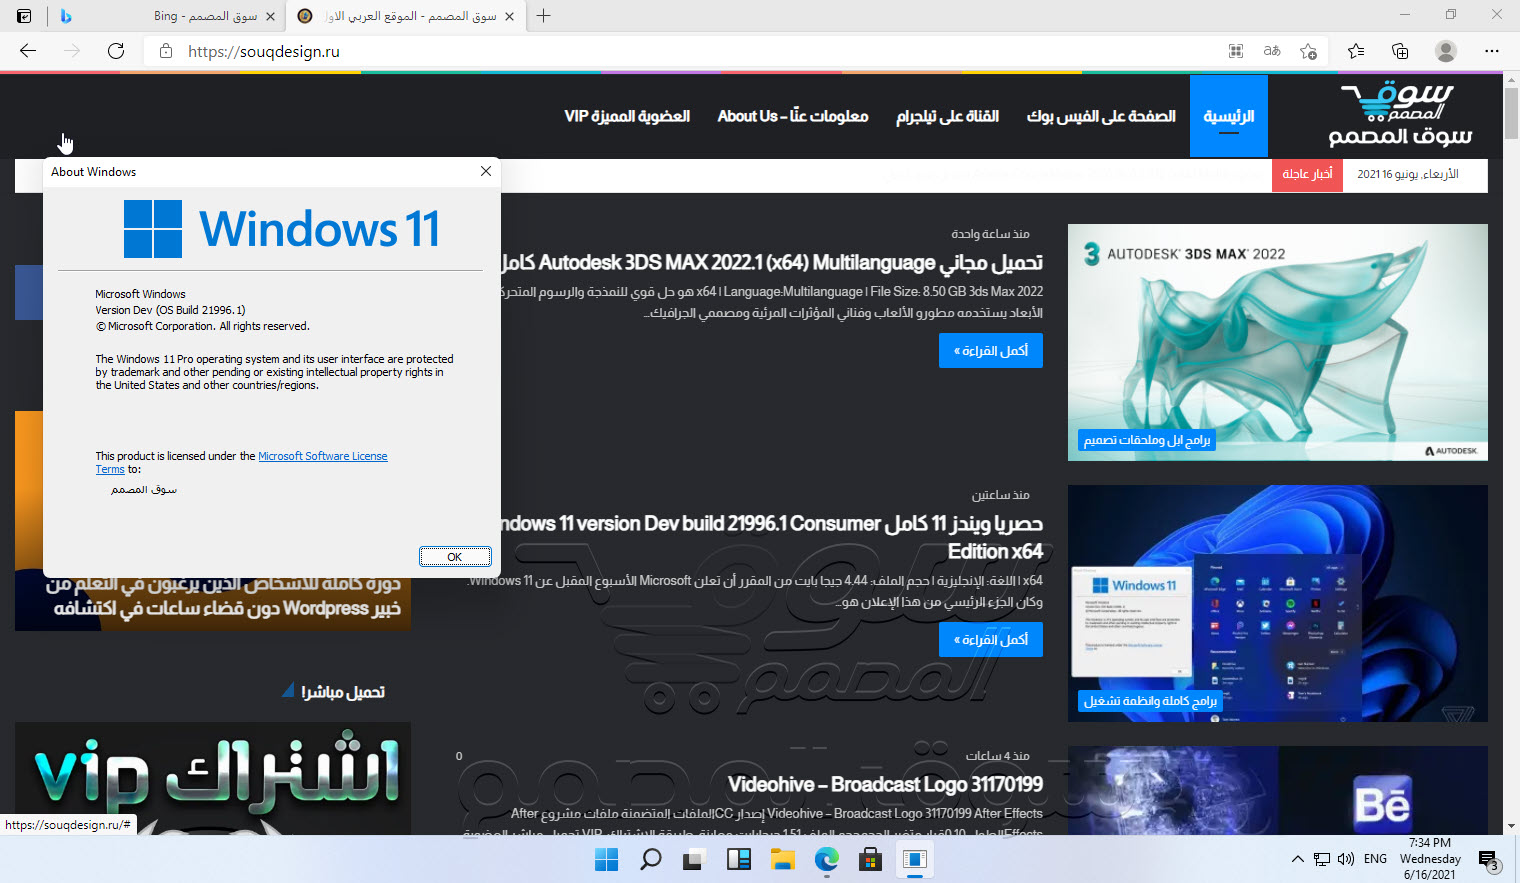 حصريا ويندز 11 كامل Windows 11 version Dev build 21996.1 Consumer Edition x64